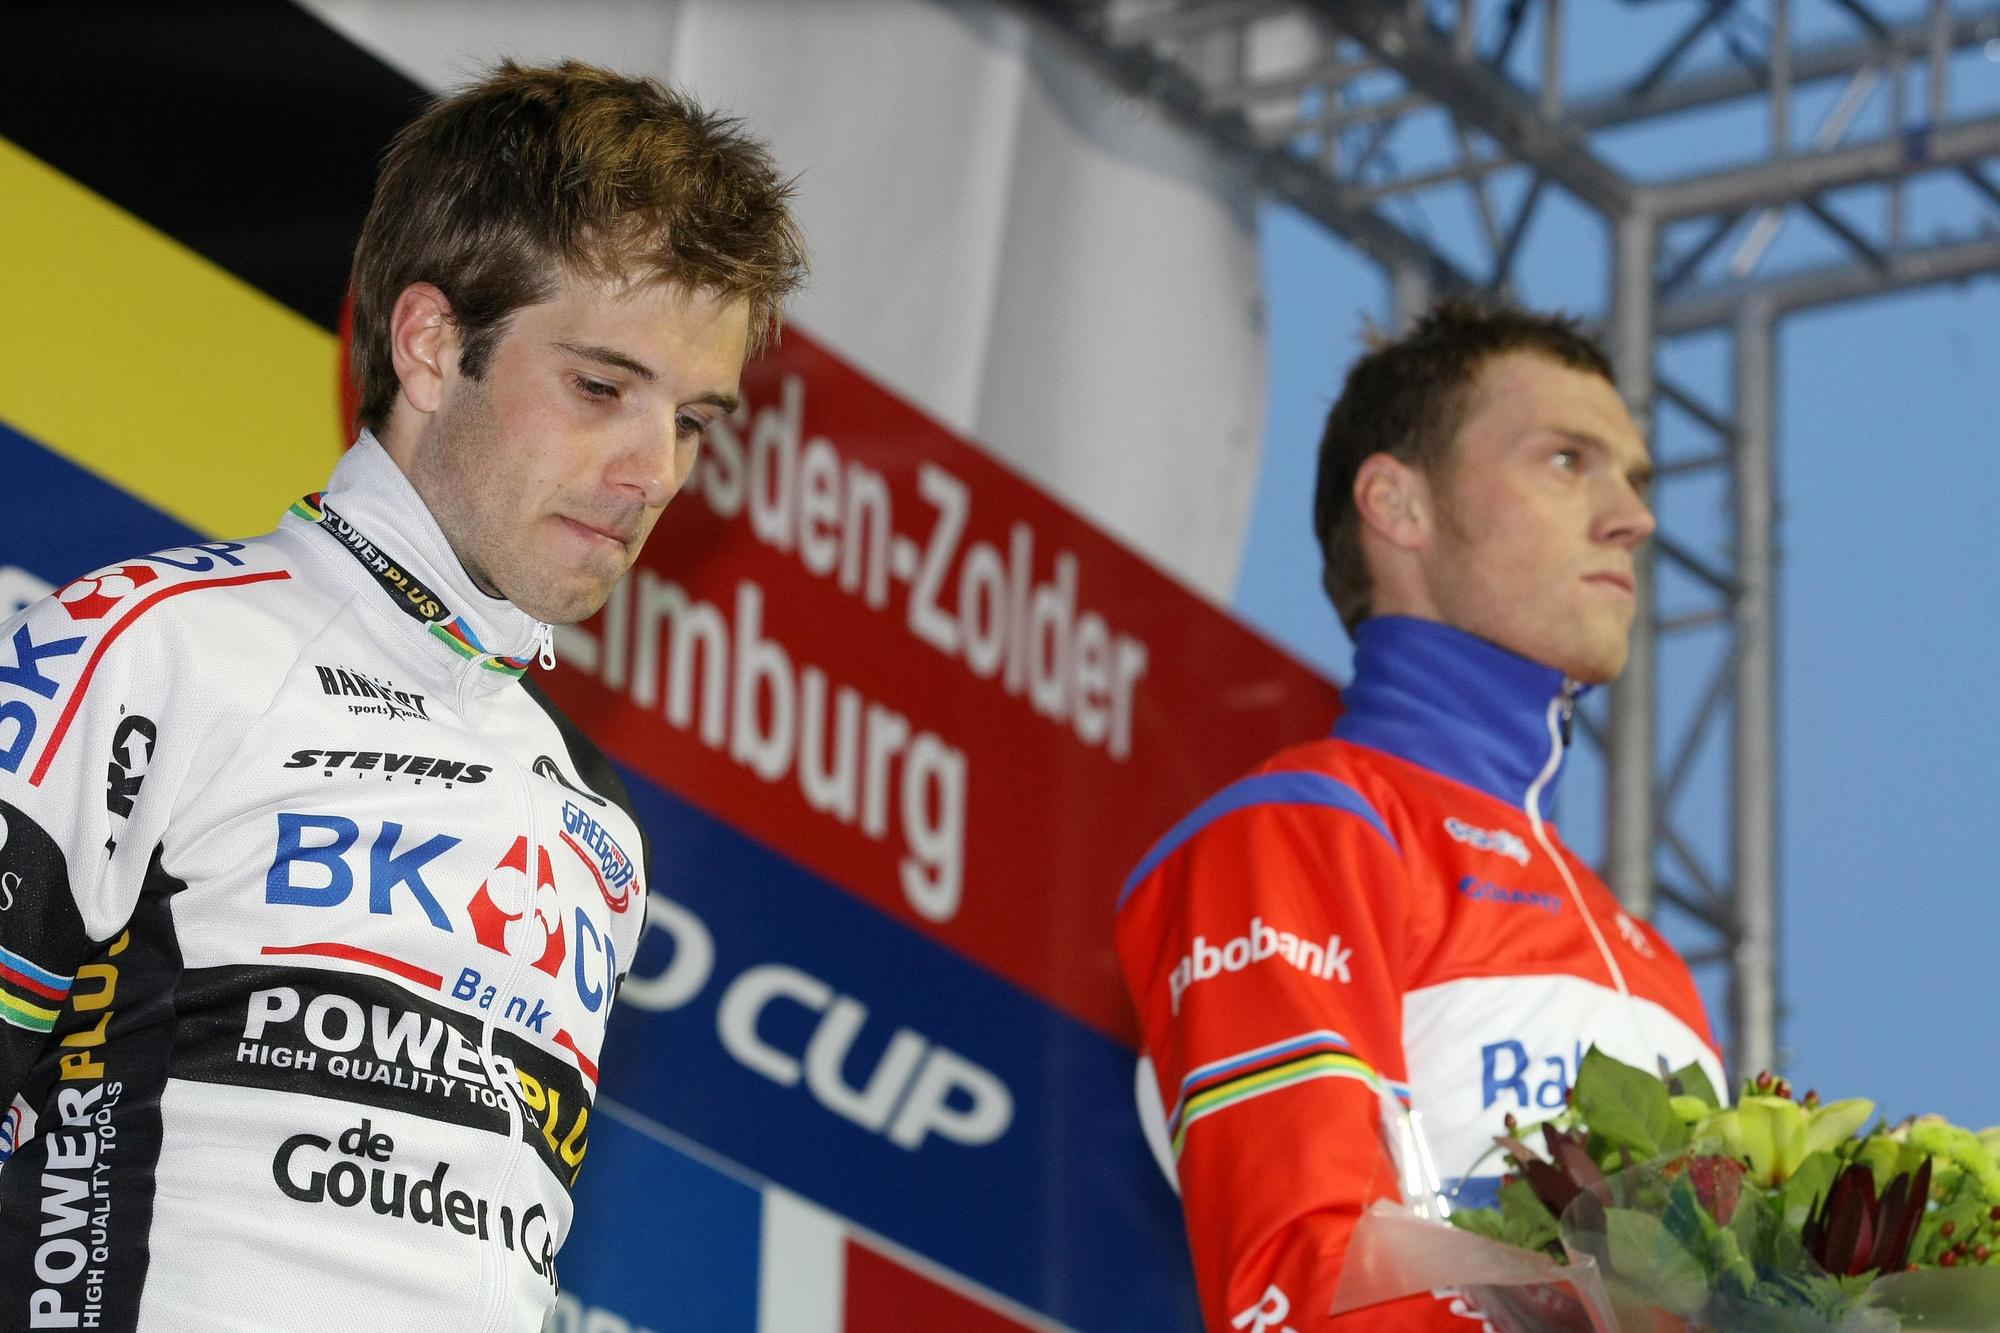 Niels Albert et Lars Boom étaient les seuls coureurs de labourés à avoir remporté le titre mondial aussi bien chez les juniors que chez les espoirs et les élites.